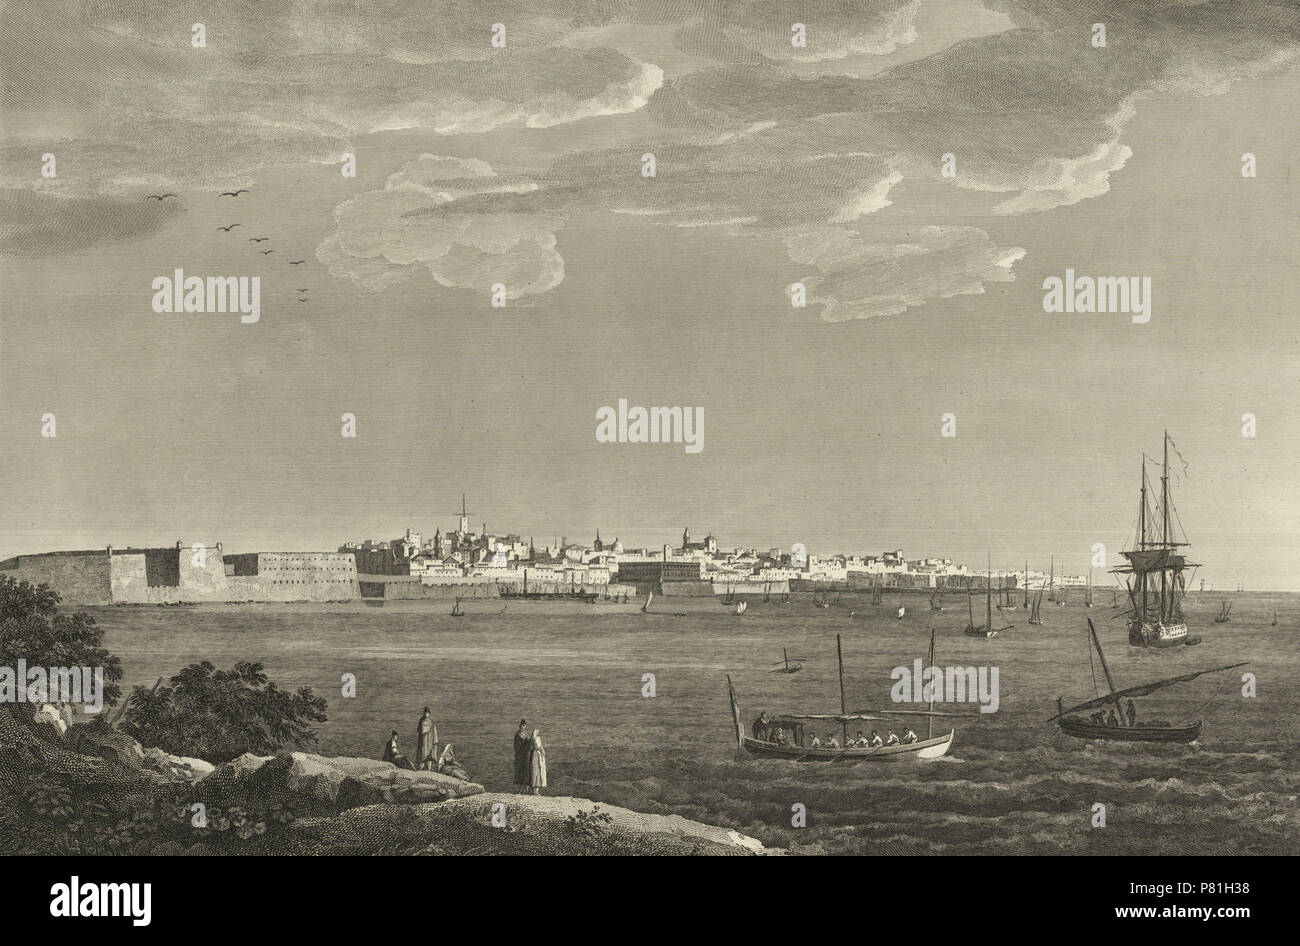 3 1806-1820, Voyage pittoresque et historique de l'Espagne, tomo II, Vista general de Cádiz (cropped) Stock Photo